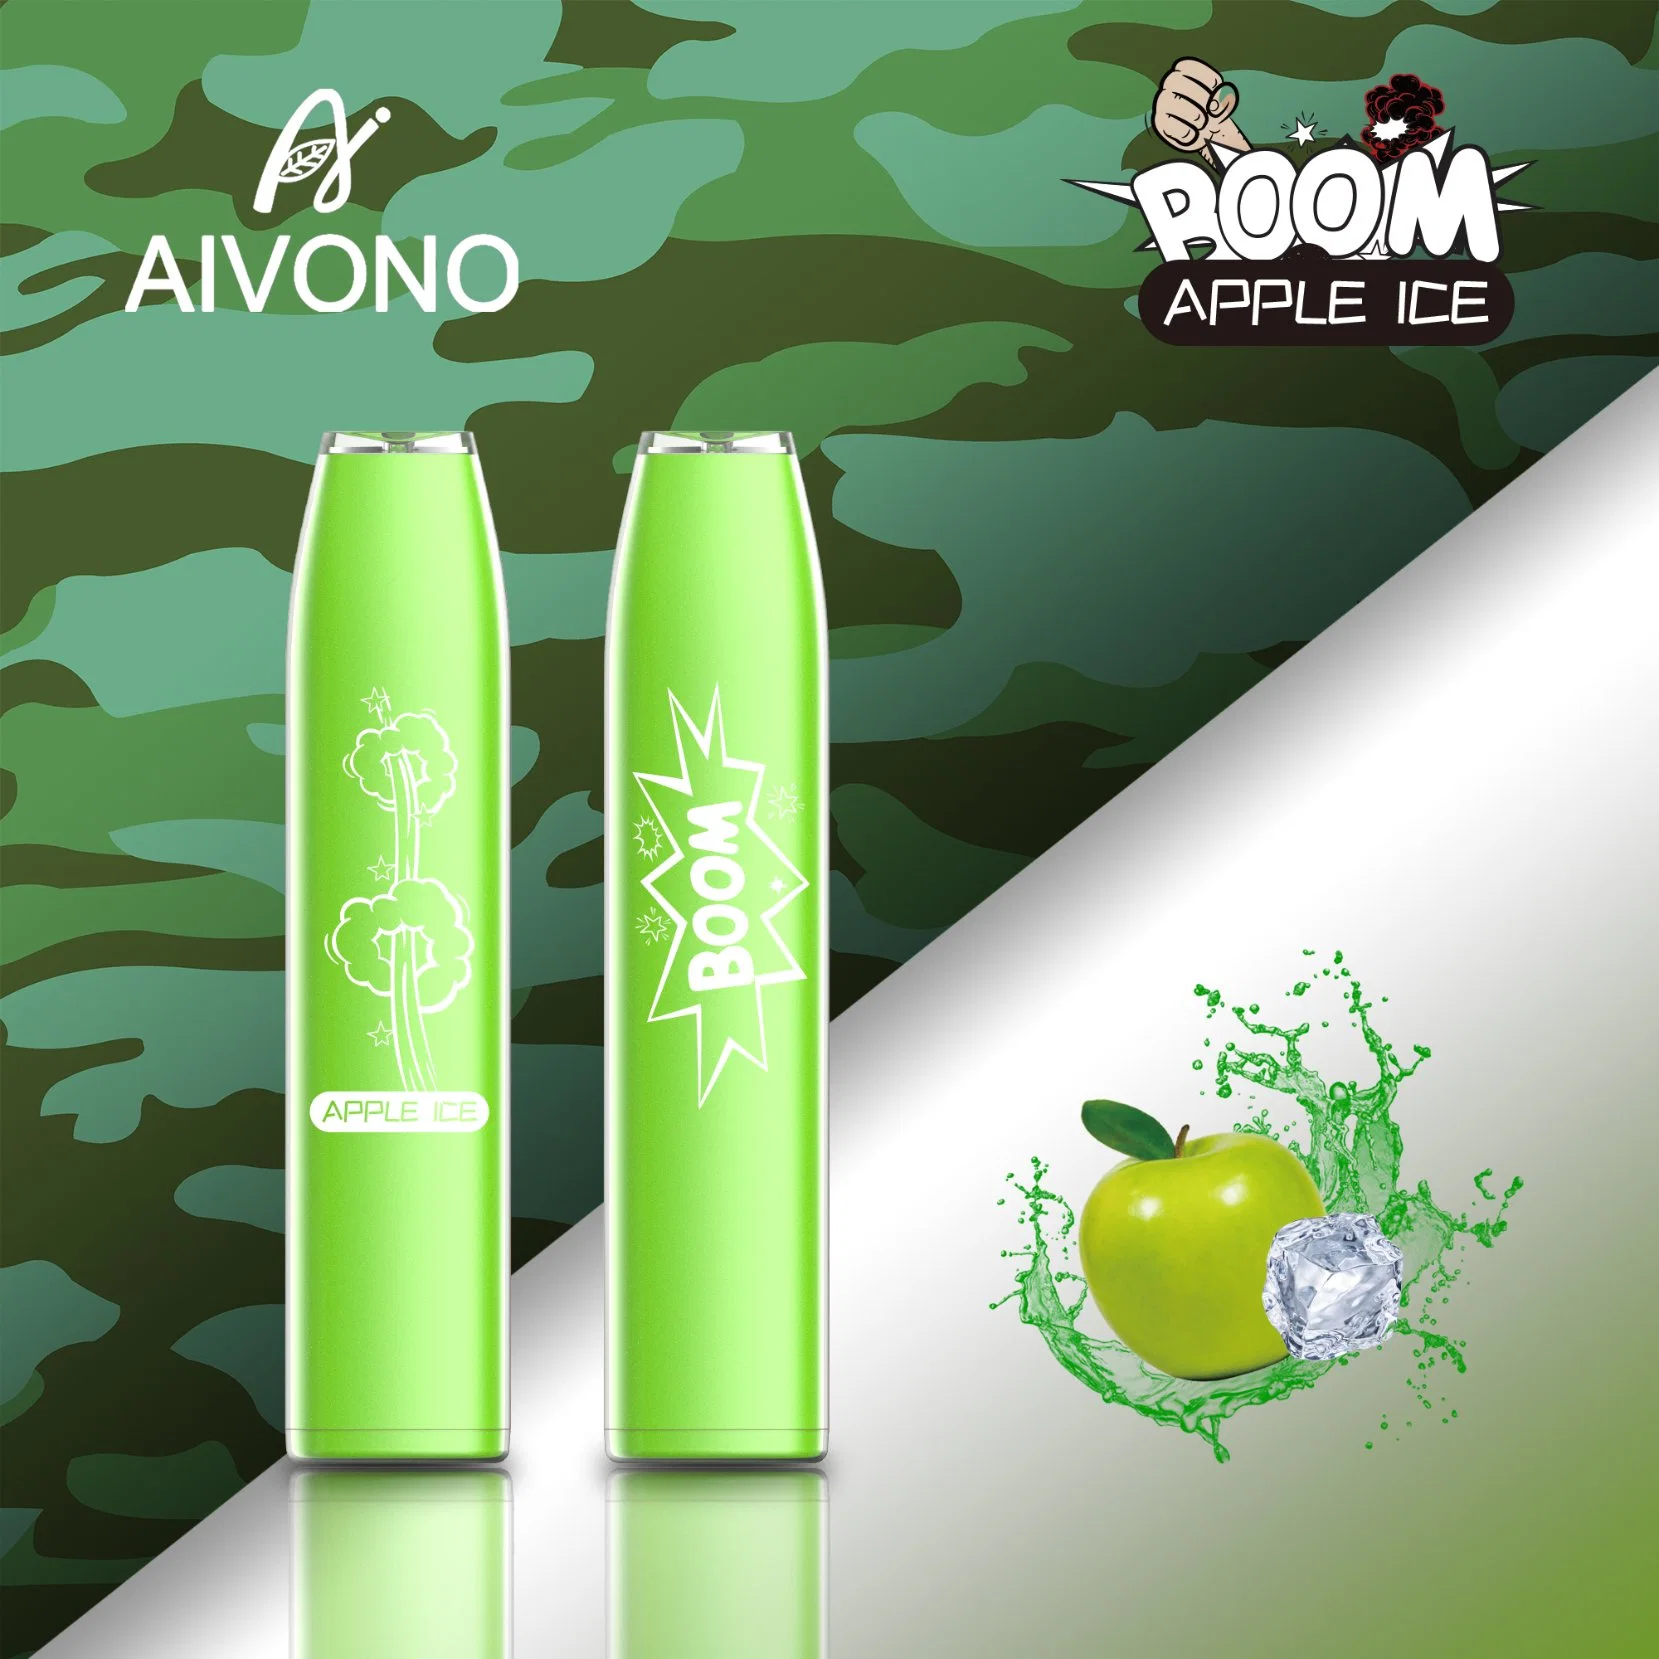 Aim Boom 600 نفخة قلم القرد القابل للاستخدام مرة واحدة مع صندوق التعبئة 500 مللي أمبير/ساعة نكهات البطارية Aivono 12